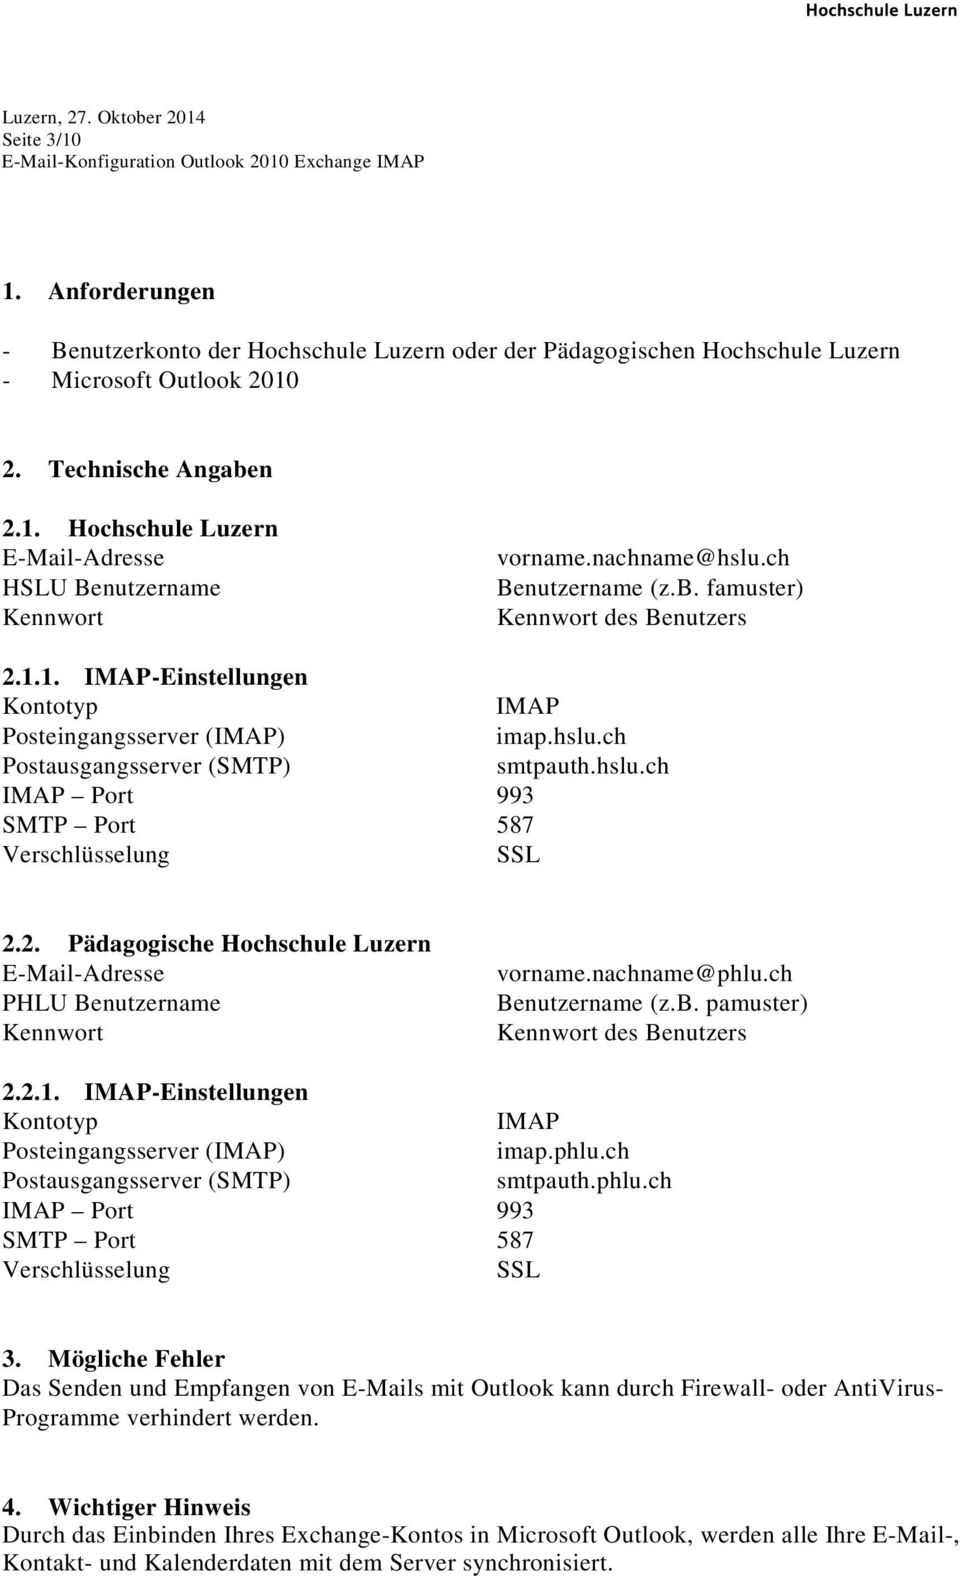 2. Pädagogische Hochschule Luzern E-Mail-Adresse PHLU Benutzername Kennwort vorname.nachname@phlu.ch Benutzername (z.b. pamuster) Kennwort des Benutzers 2.2.1.